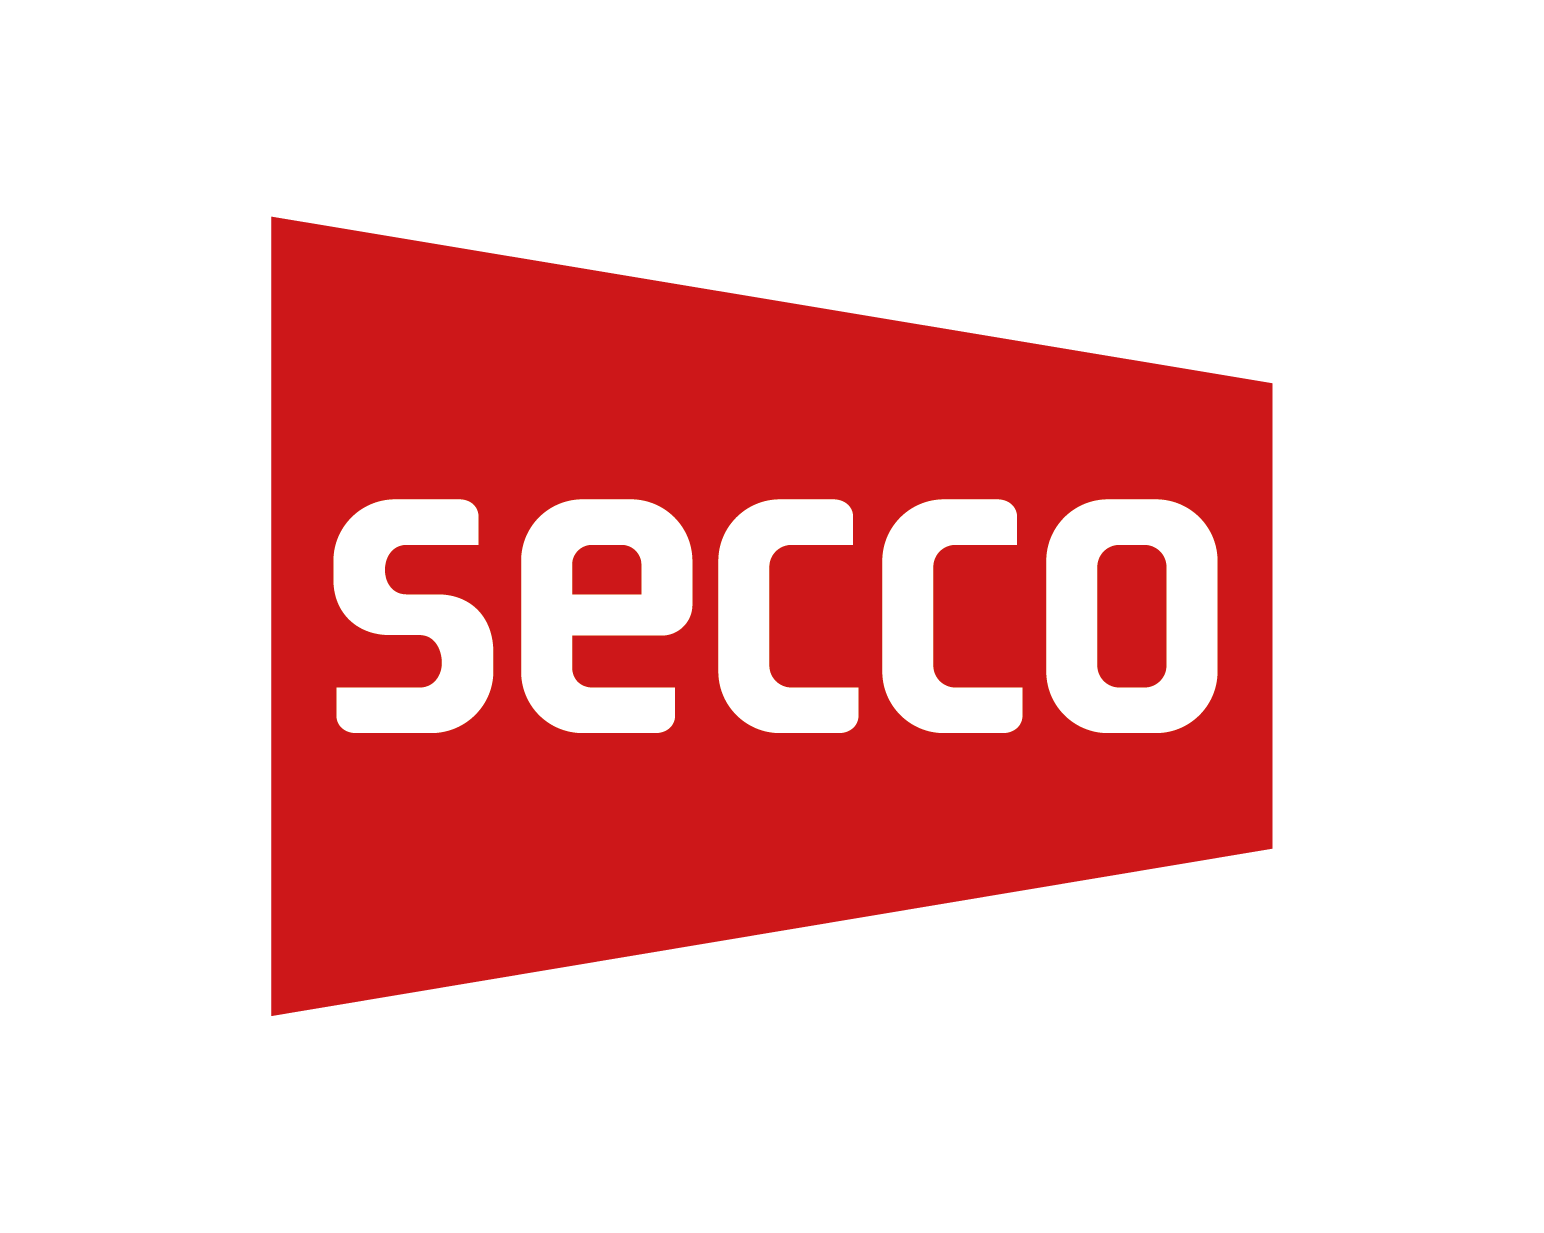 Secco_Sistemi_logo02